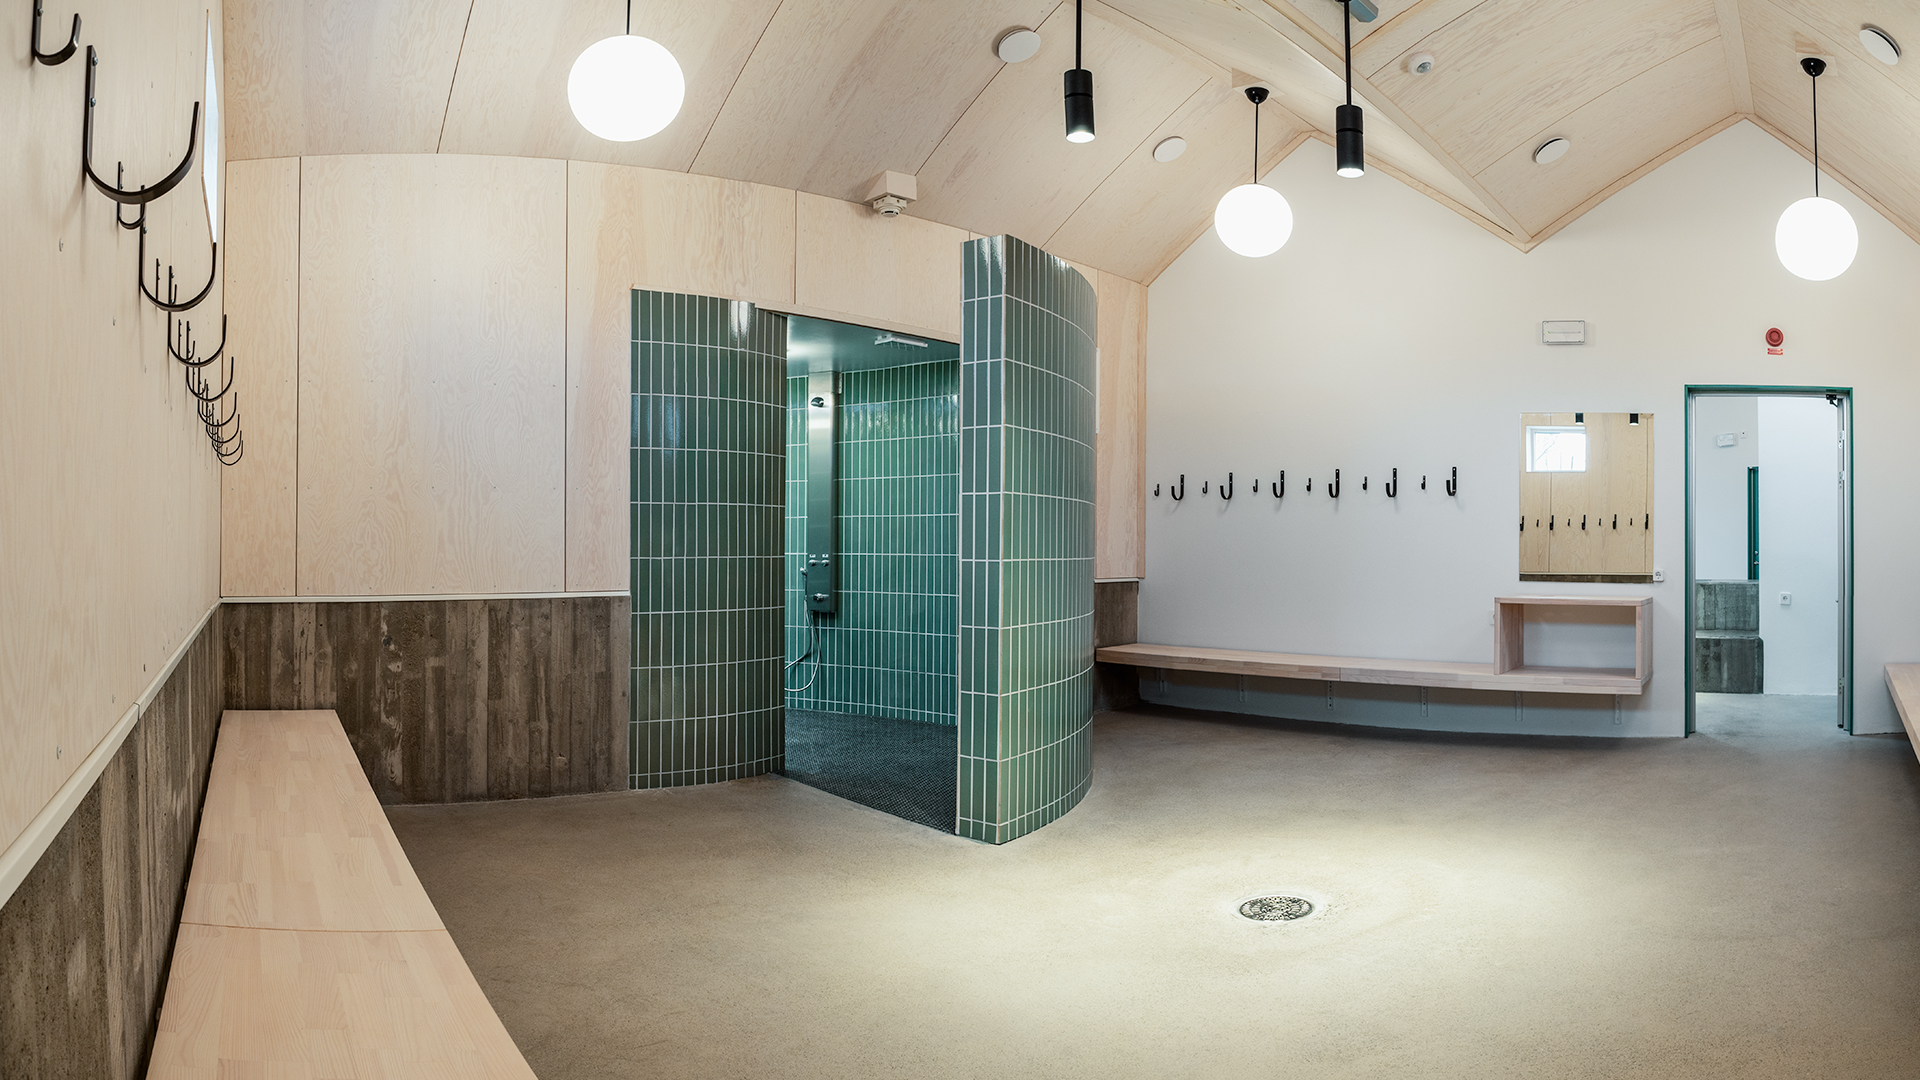 Omklädnings- och duschrum med klotformade takarmaturer och ett duschrum med väggar i runt utsnitt.